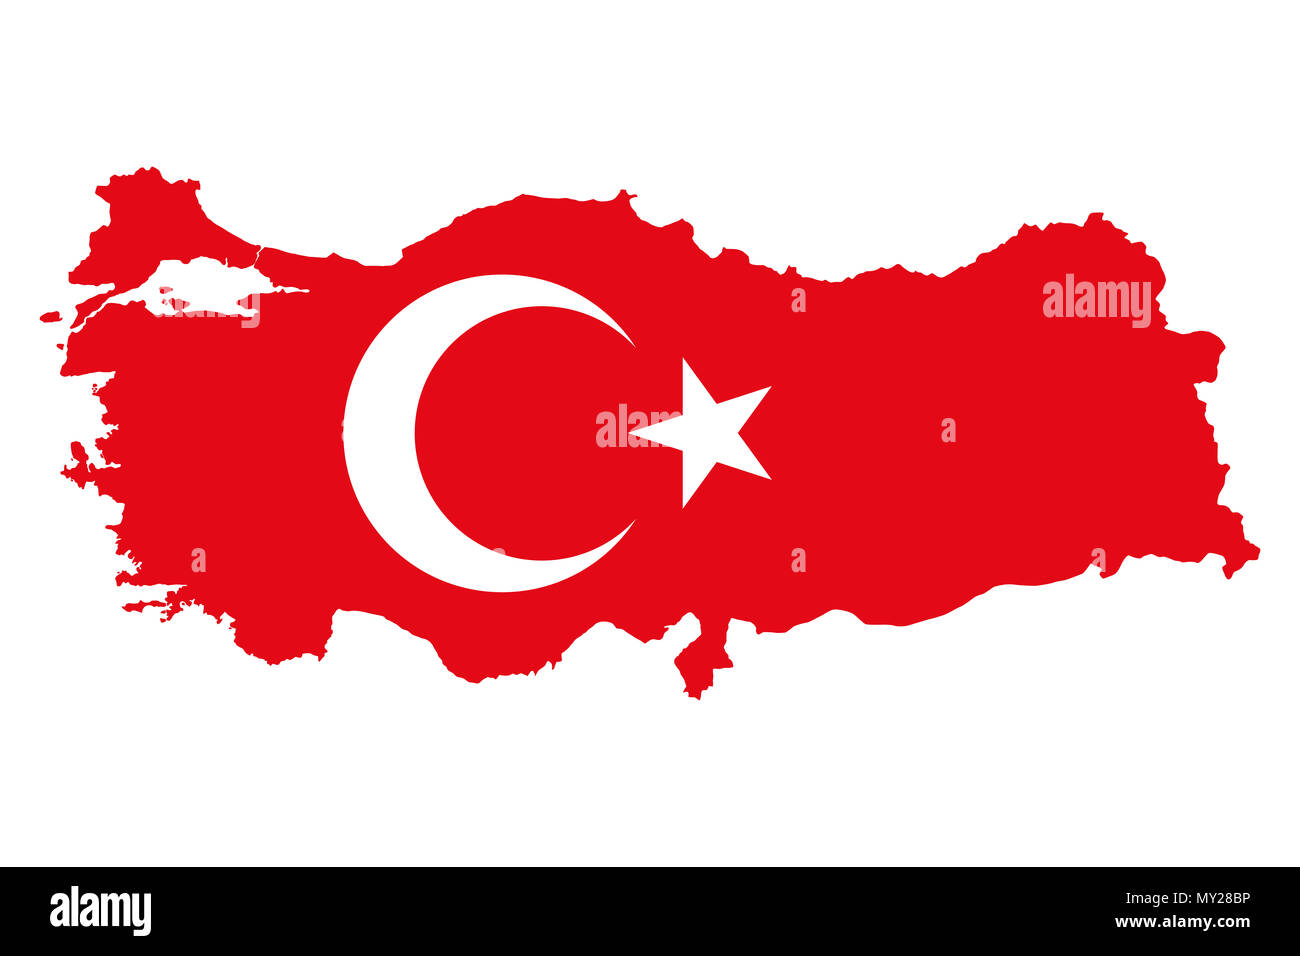 Bandiera della Turchia nel paese silhouette. Al bayrak. Bandiera rossa con stella bianca e crescent, nel paese contorno. Paese transcontinentale in Eurasia. Foto Stock